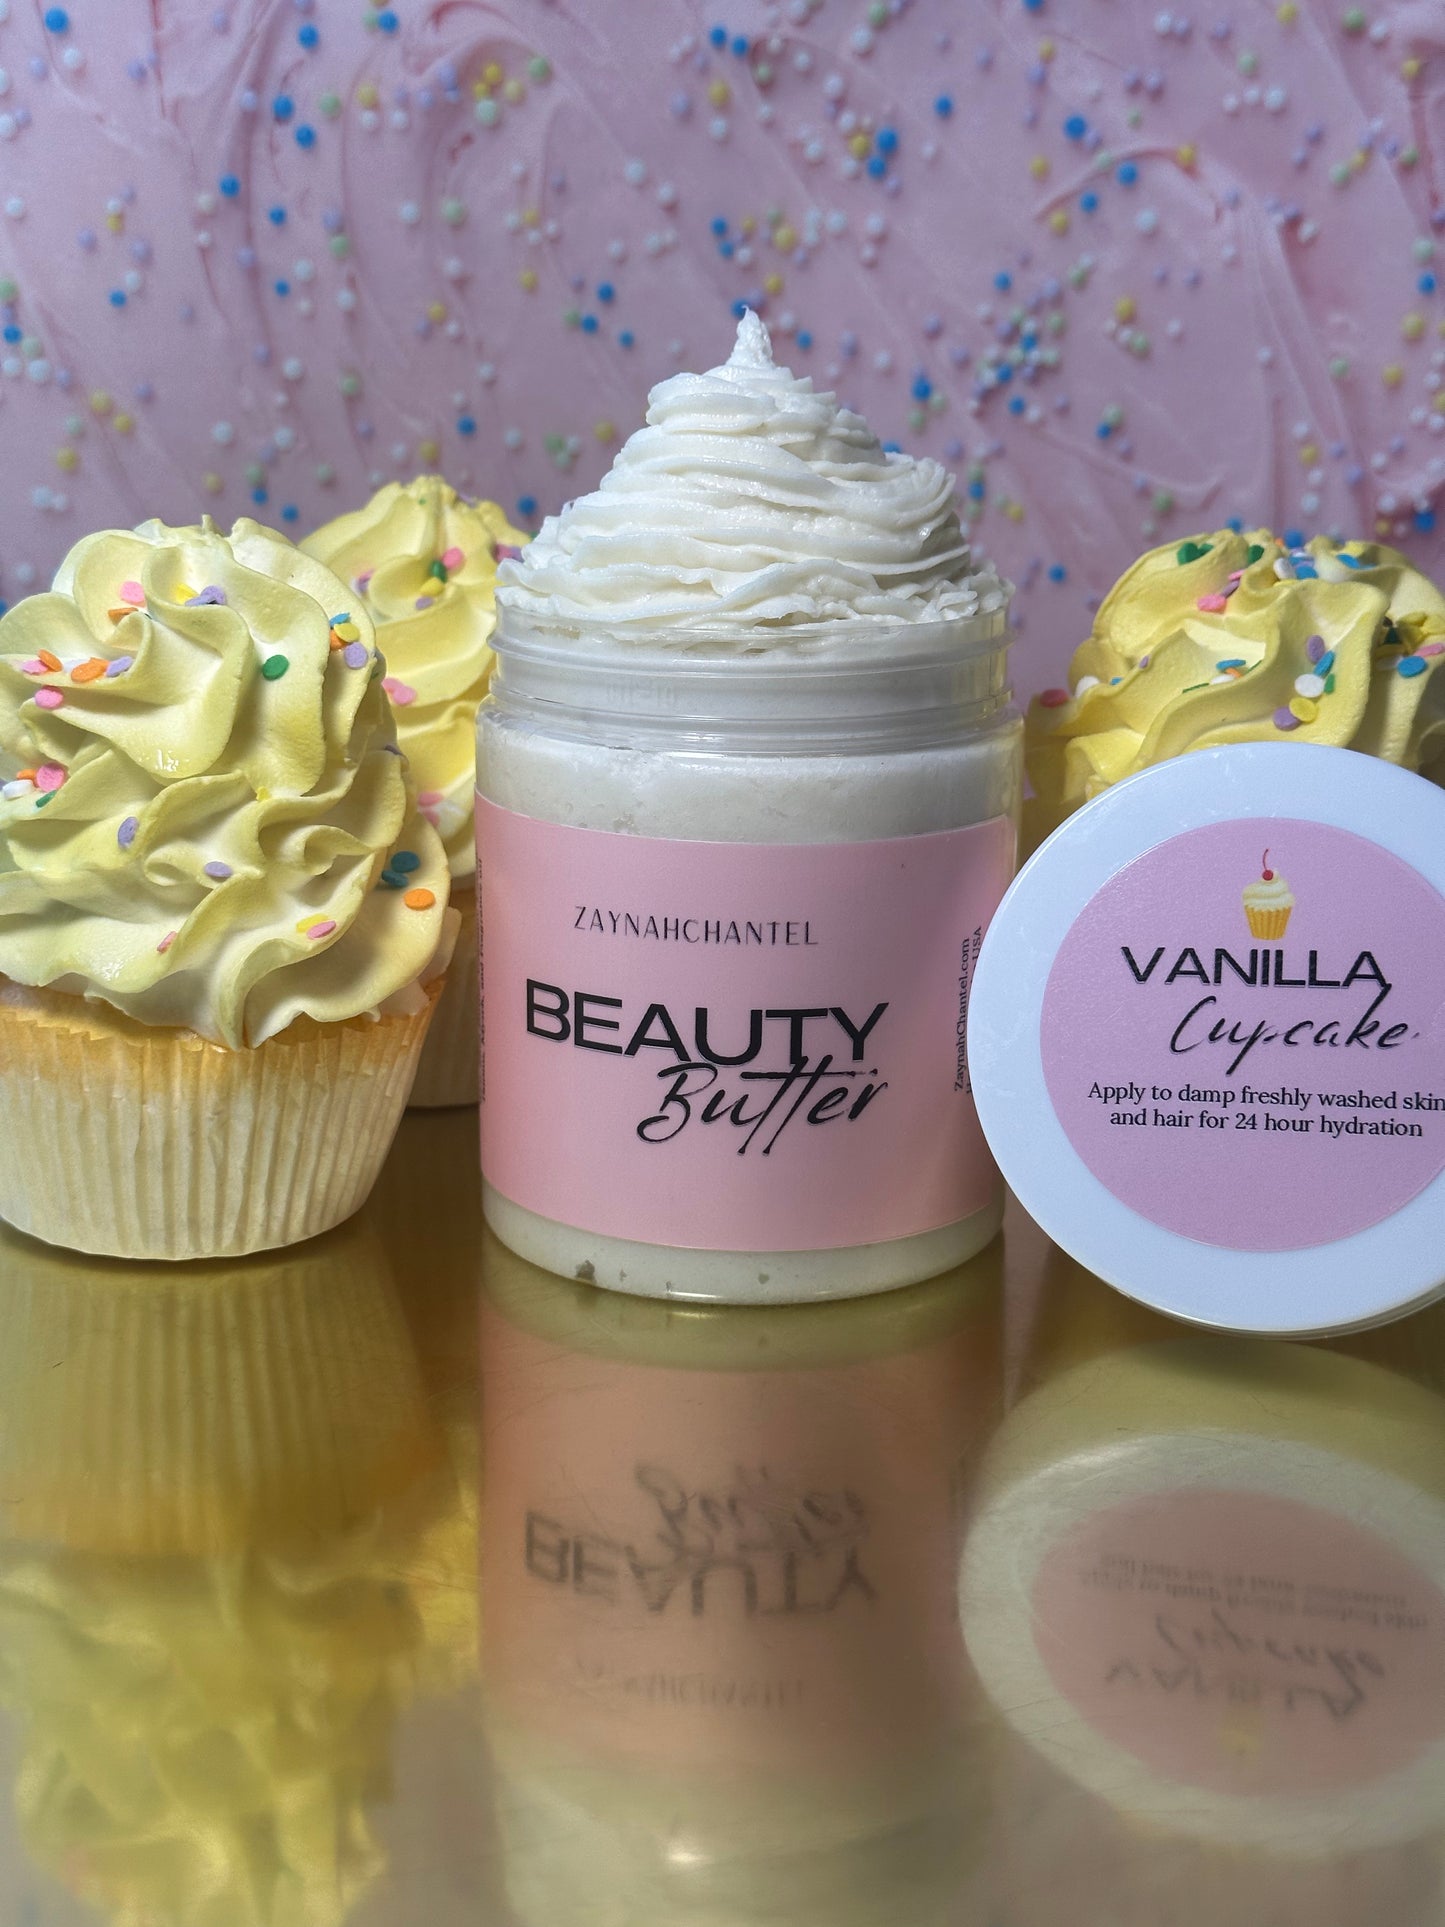 Vanilla Cupcake Beauty Butter